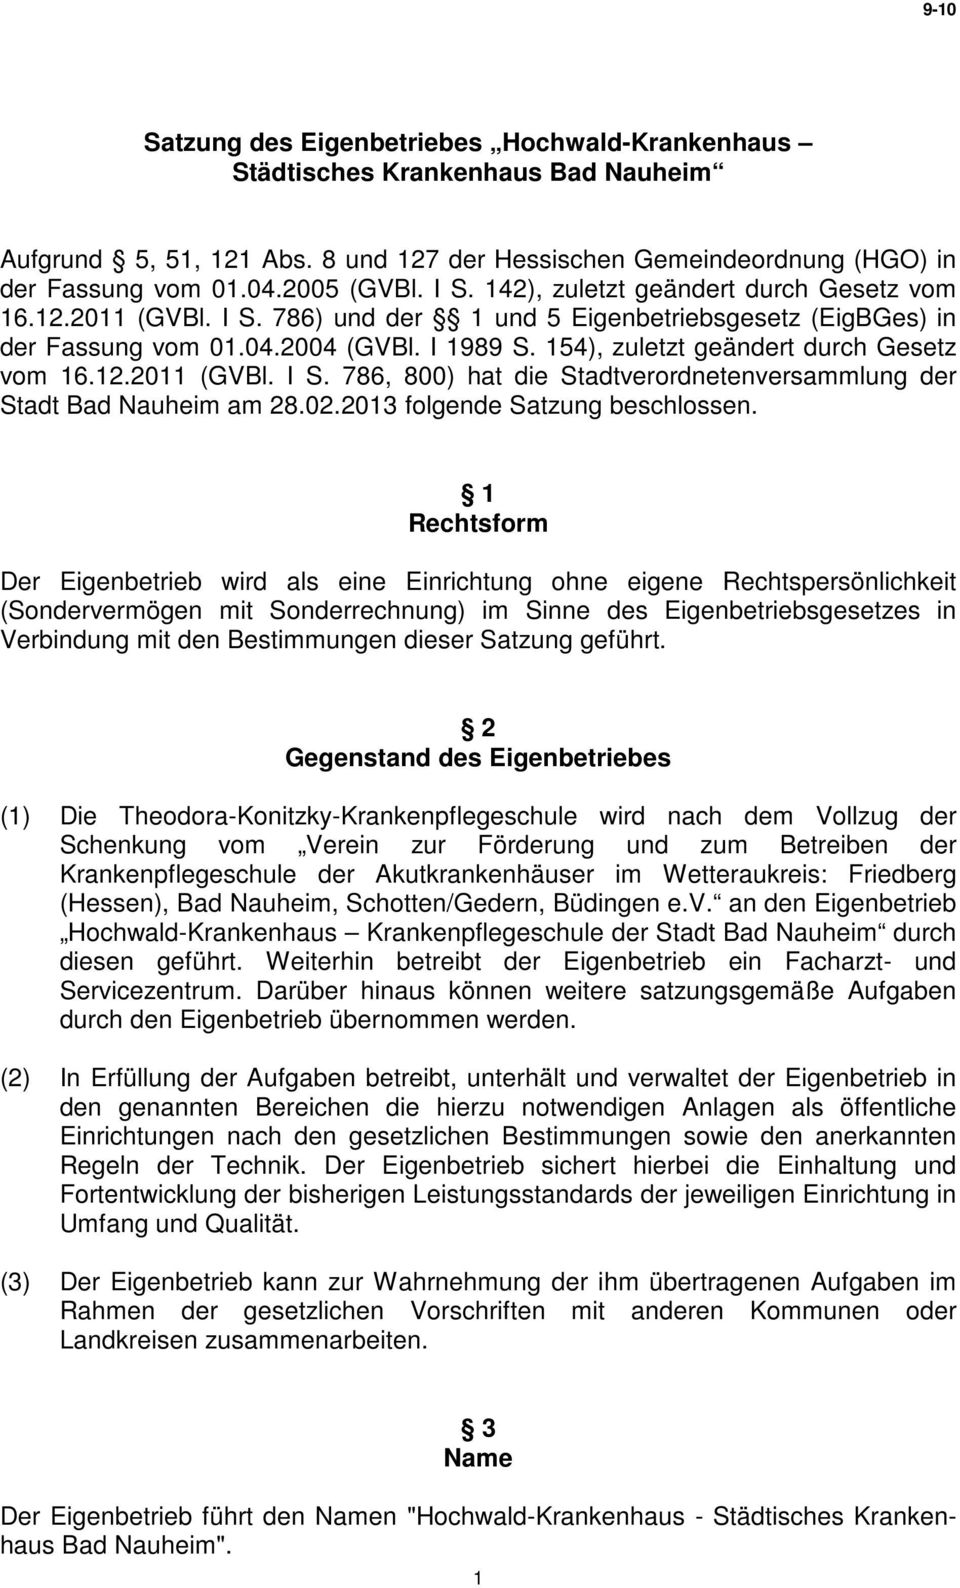 154), zuletzt geändert durch Gesetz vom 16.12.2011 (GVBl. I S. 786, 800) hat die Stadtverordnetenversammlung der Stadt Bad Nauheim am 28.02.2013 folgende Satzung beschlossen.